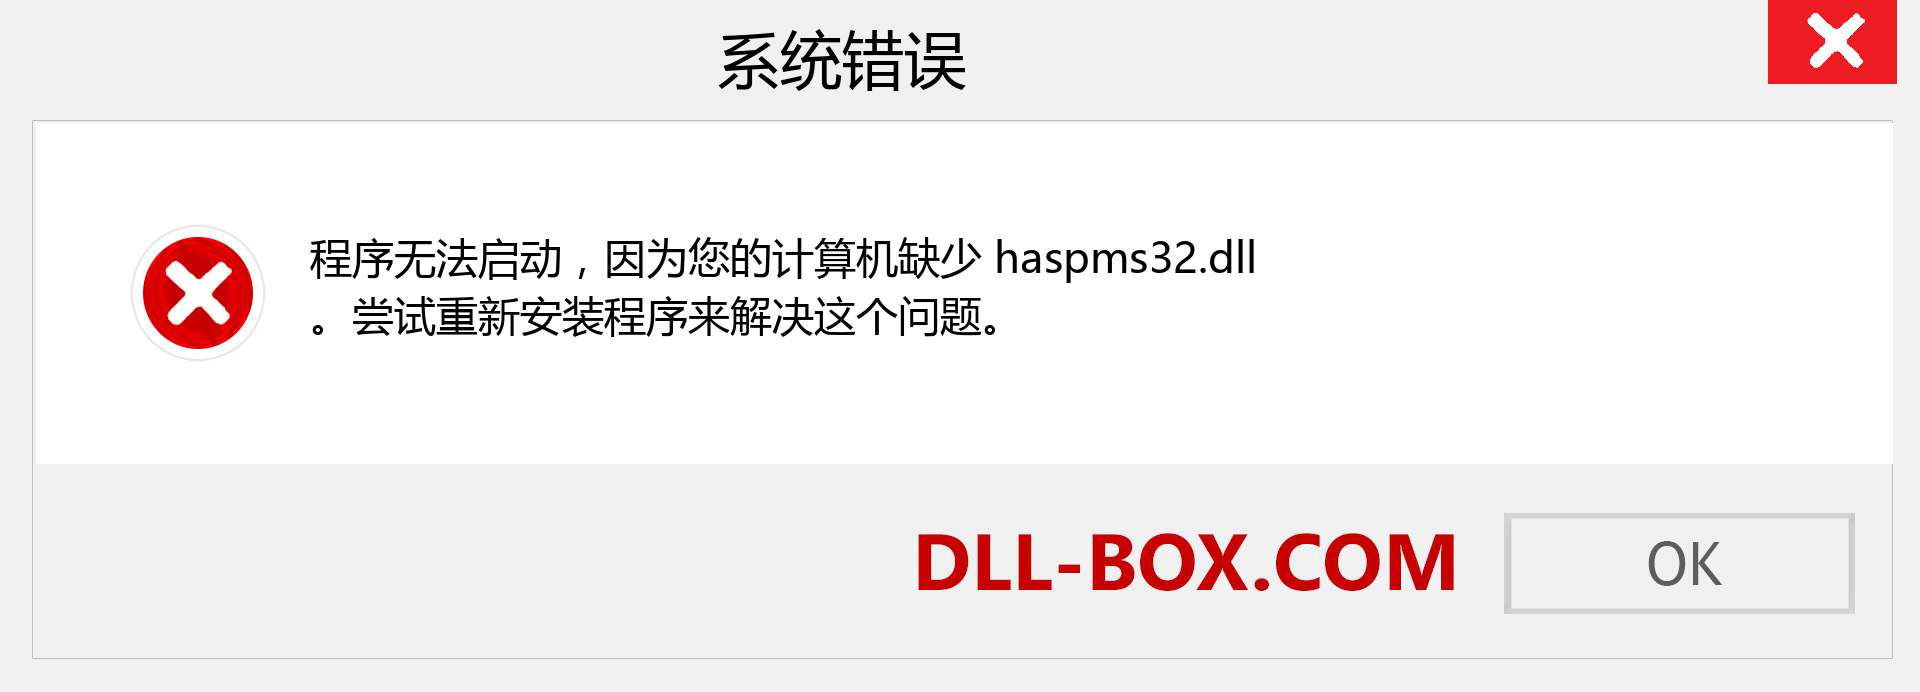 haspms32.dll 文件丢失？。 适用于 Windows 7、8、10 的下载 - 修复 Windows、照片、图像上的 haspms32 dll 丢失错误